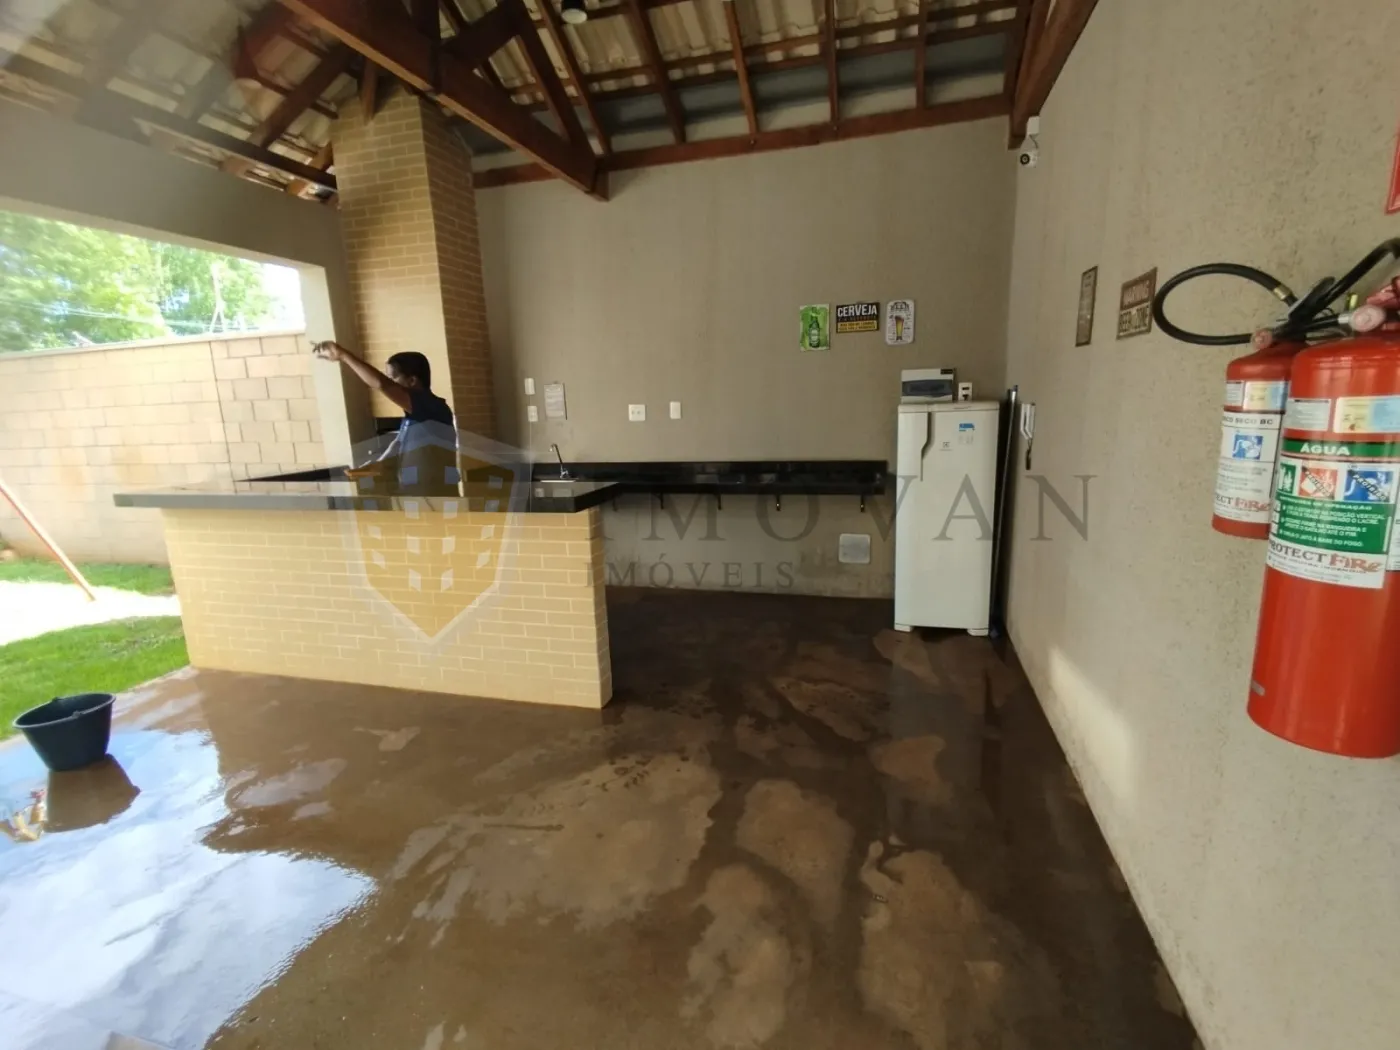 Alugar Apartamento / Padrão em Ribeirão Preto R$ 700,00 - Foto 11